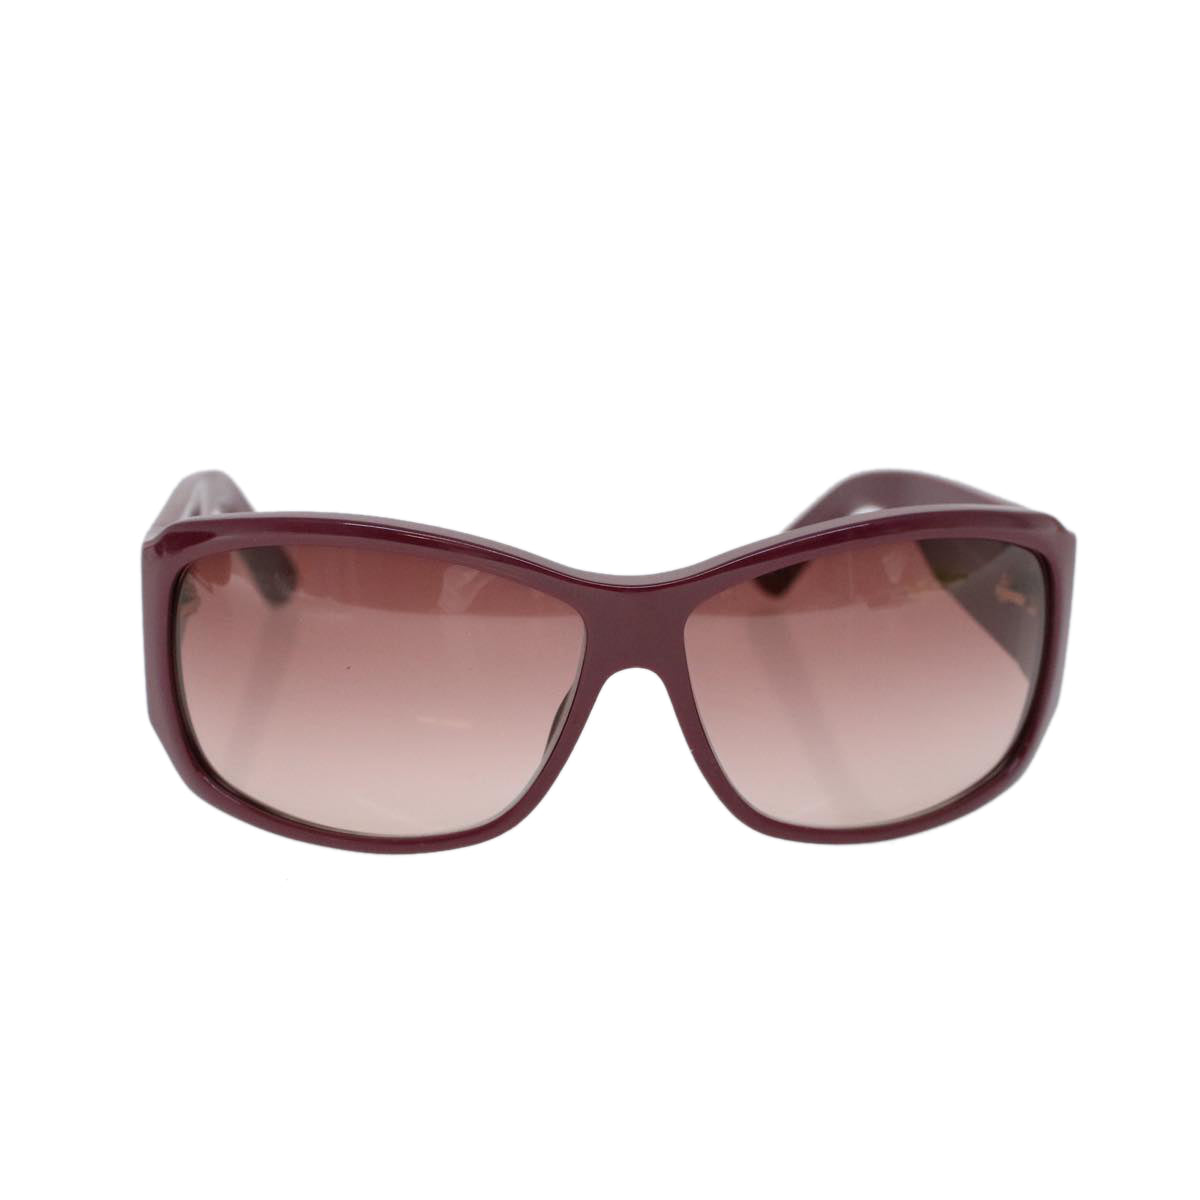 GUCCI Sunglasses Plastic Purple Auth cl742 - 0